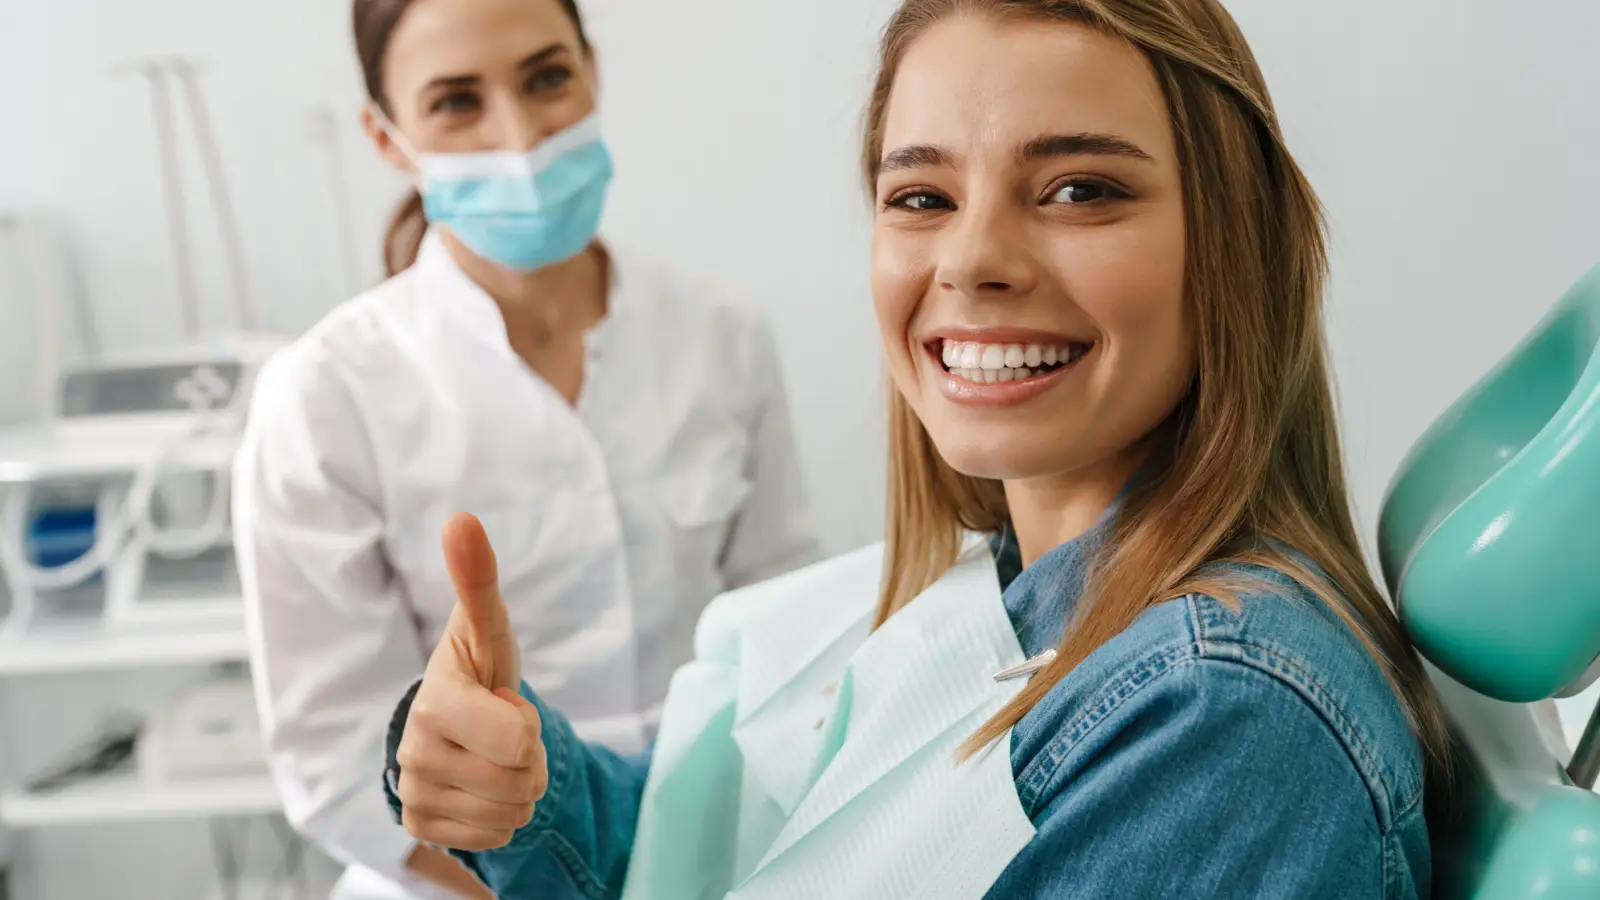 ما هو علاج نزول اللثة وتعري الأسنان؟